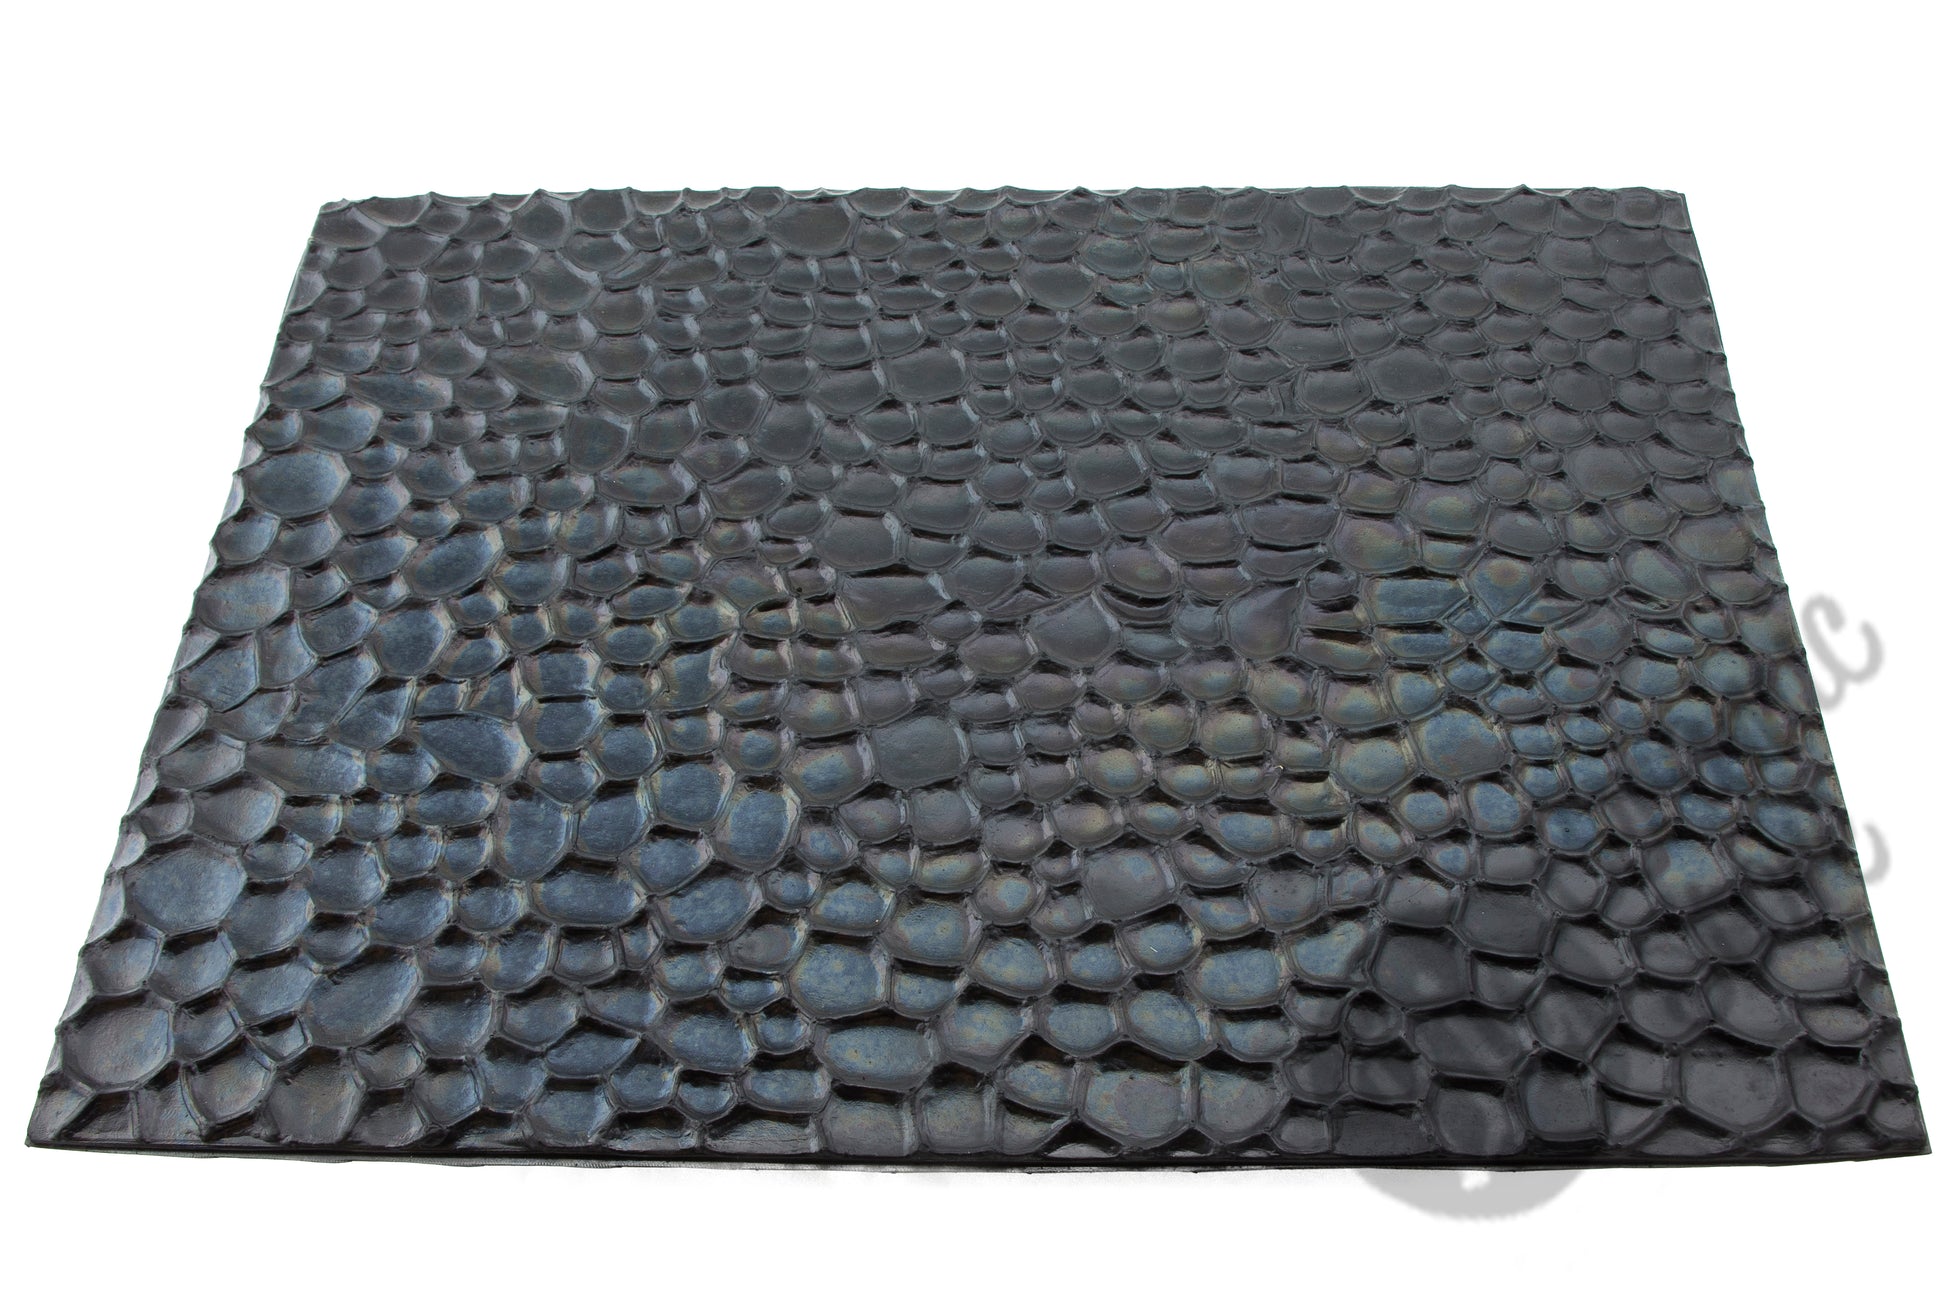 Chinese Clay Art XL USA Plastic Texture Mats, Rocks Pattern image 1